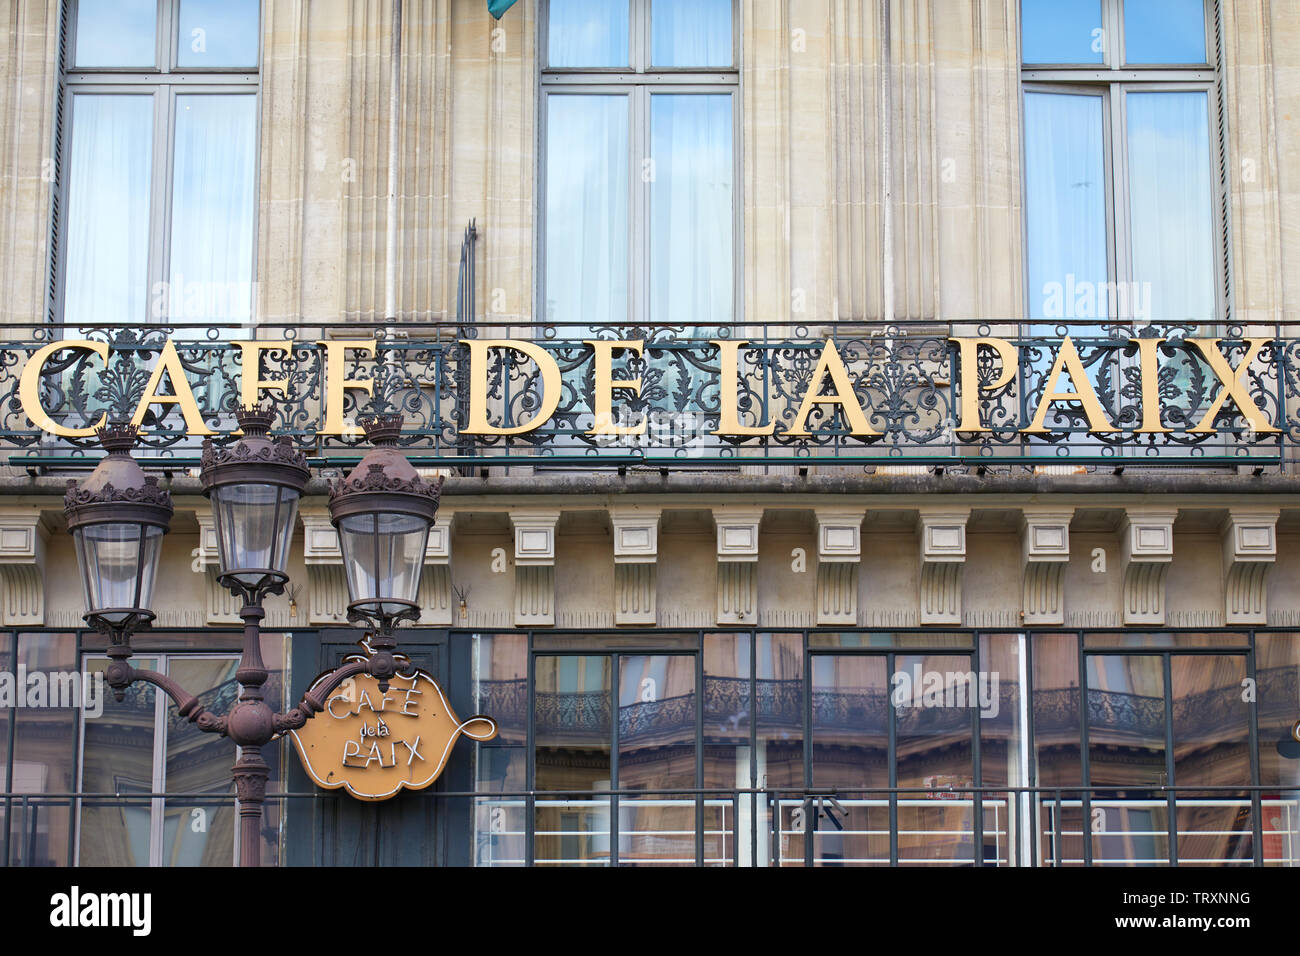 PARIS, FRANCE - JULY 22, 2017: Famous Cafe de la Paix sign in golden letters in Paris, France Stock Photo